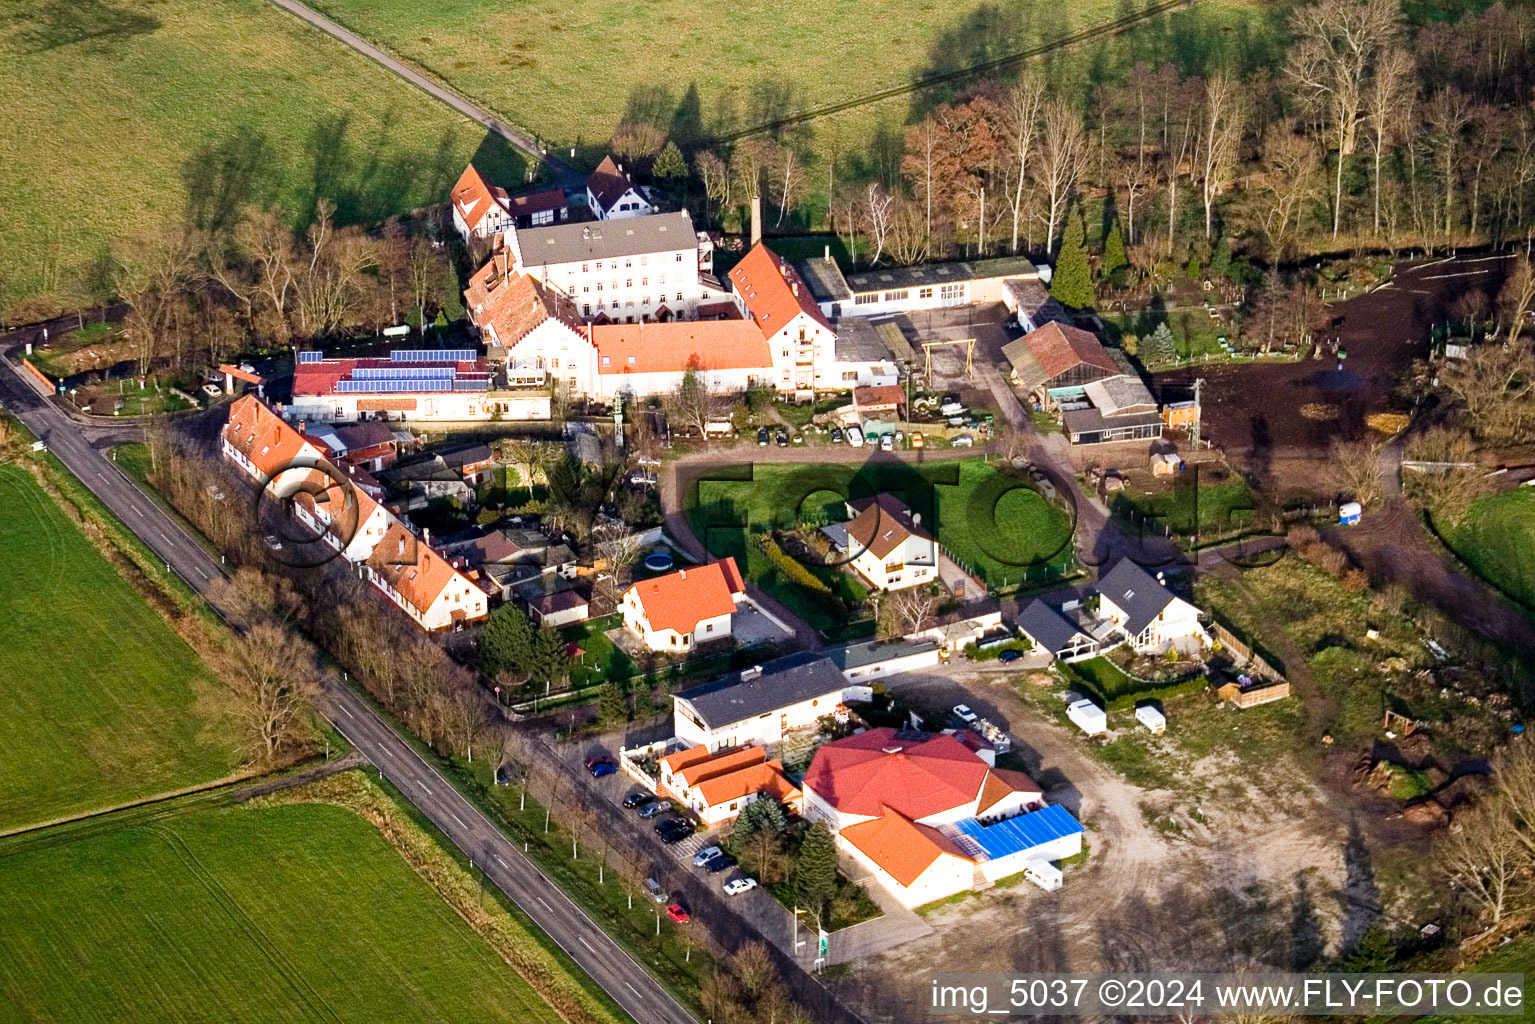 Vue aérienne de Fuchsmühle à Offenbach an der Queich dans le département Rhénanie-Palatinat, Allemagne